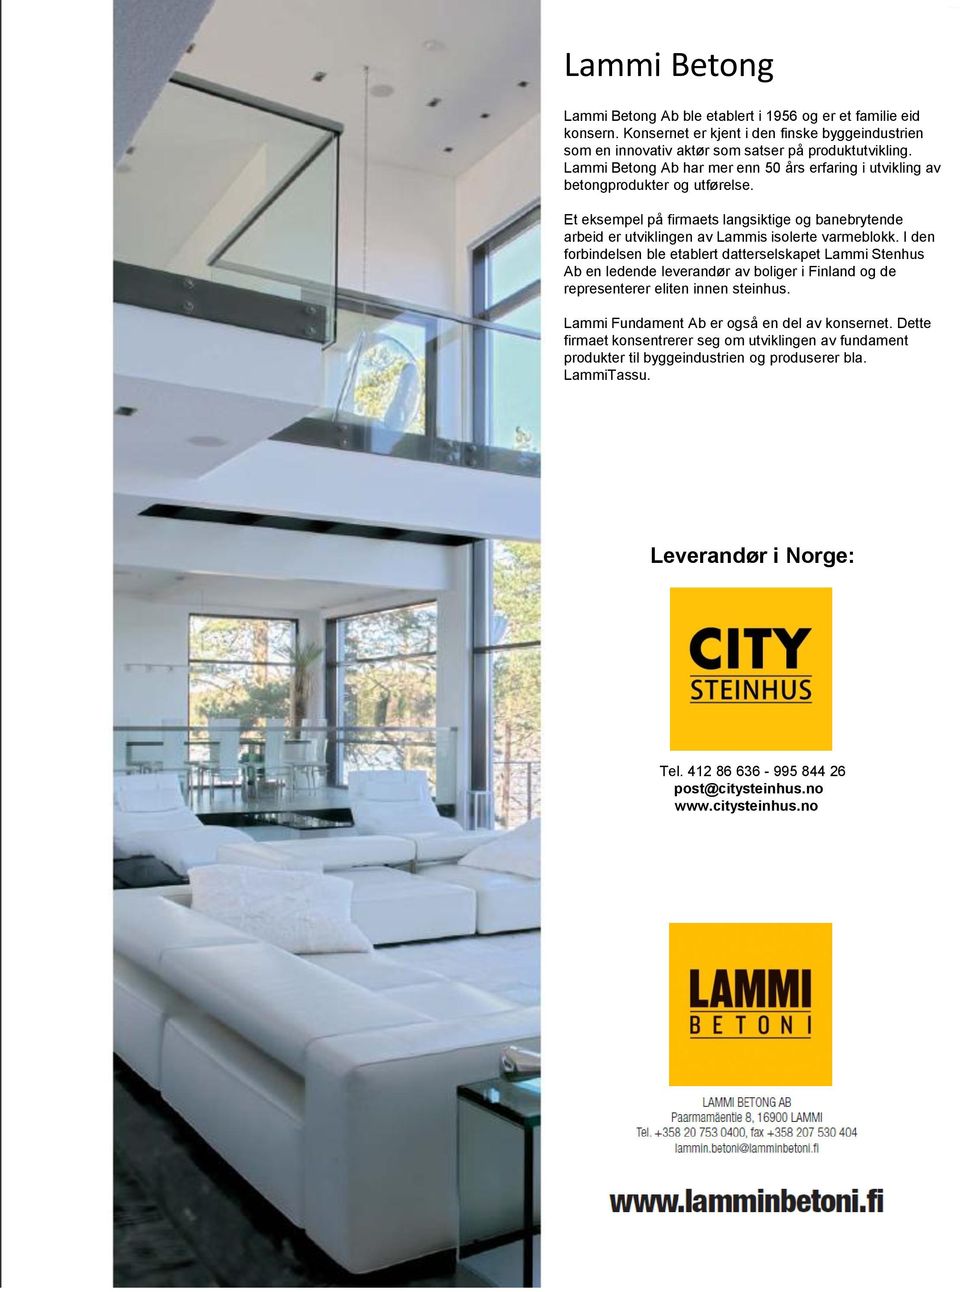 I den forbindelsen ble etablert datterselskapet Lammi Stenhus Ab en ledende leverandør av boliger i Finland og de representerer eliten innen steinhus.